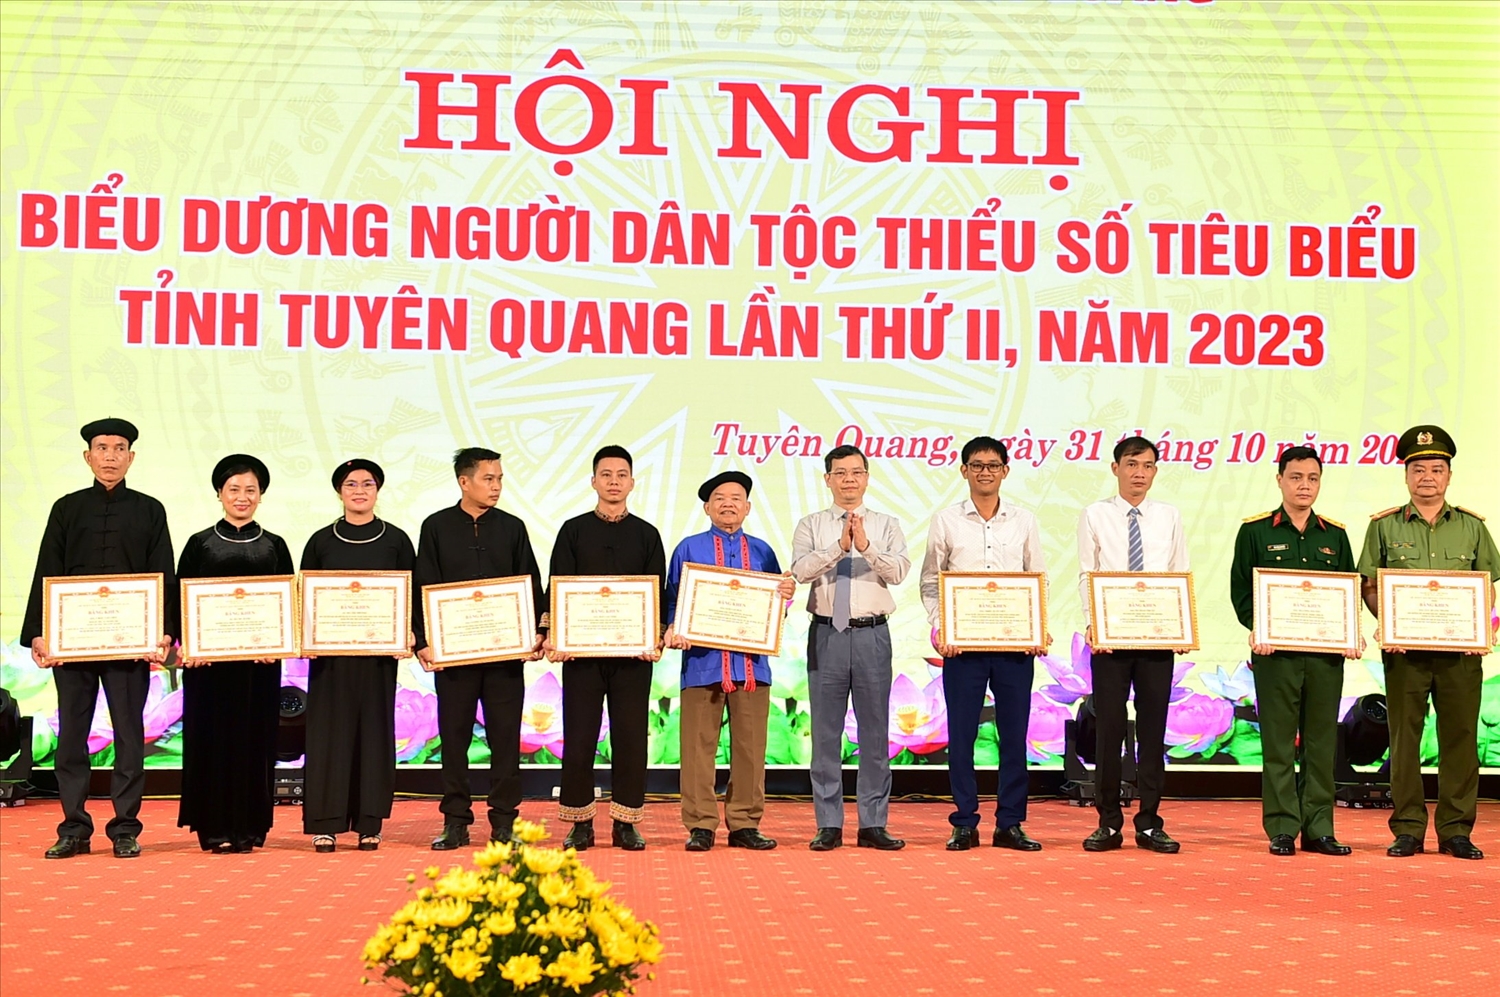 Ông Nguyễn Văn Sơn trao Bằng khen cho các cá nhân là người DTTS có thành tích xuất sắc.